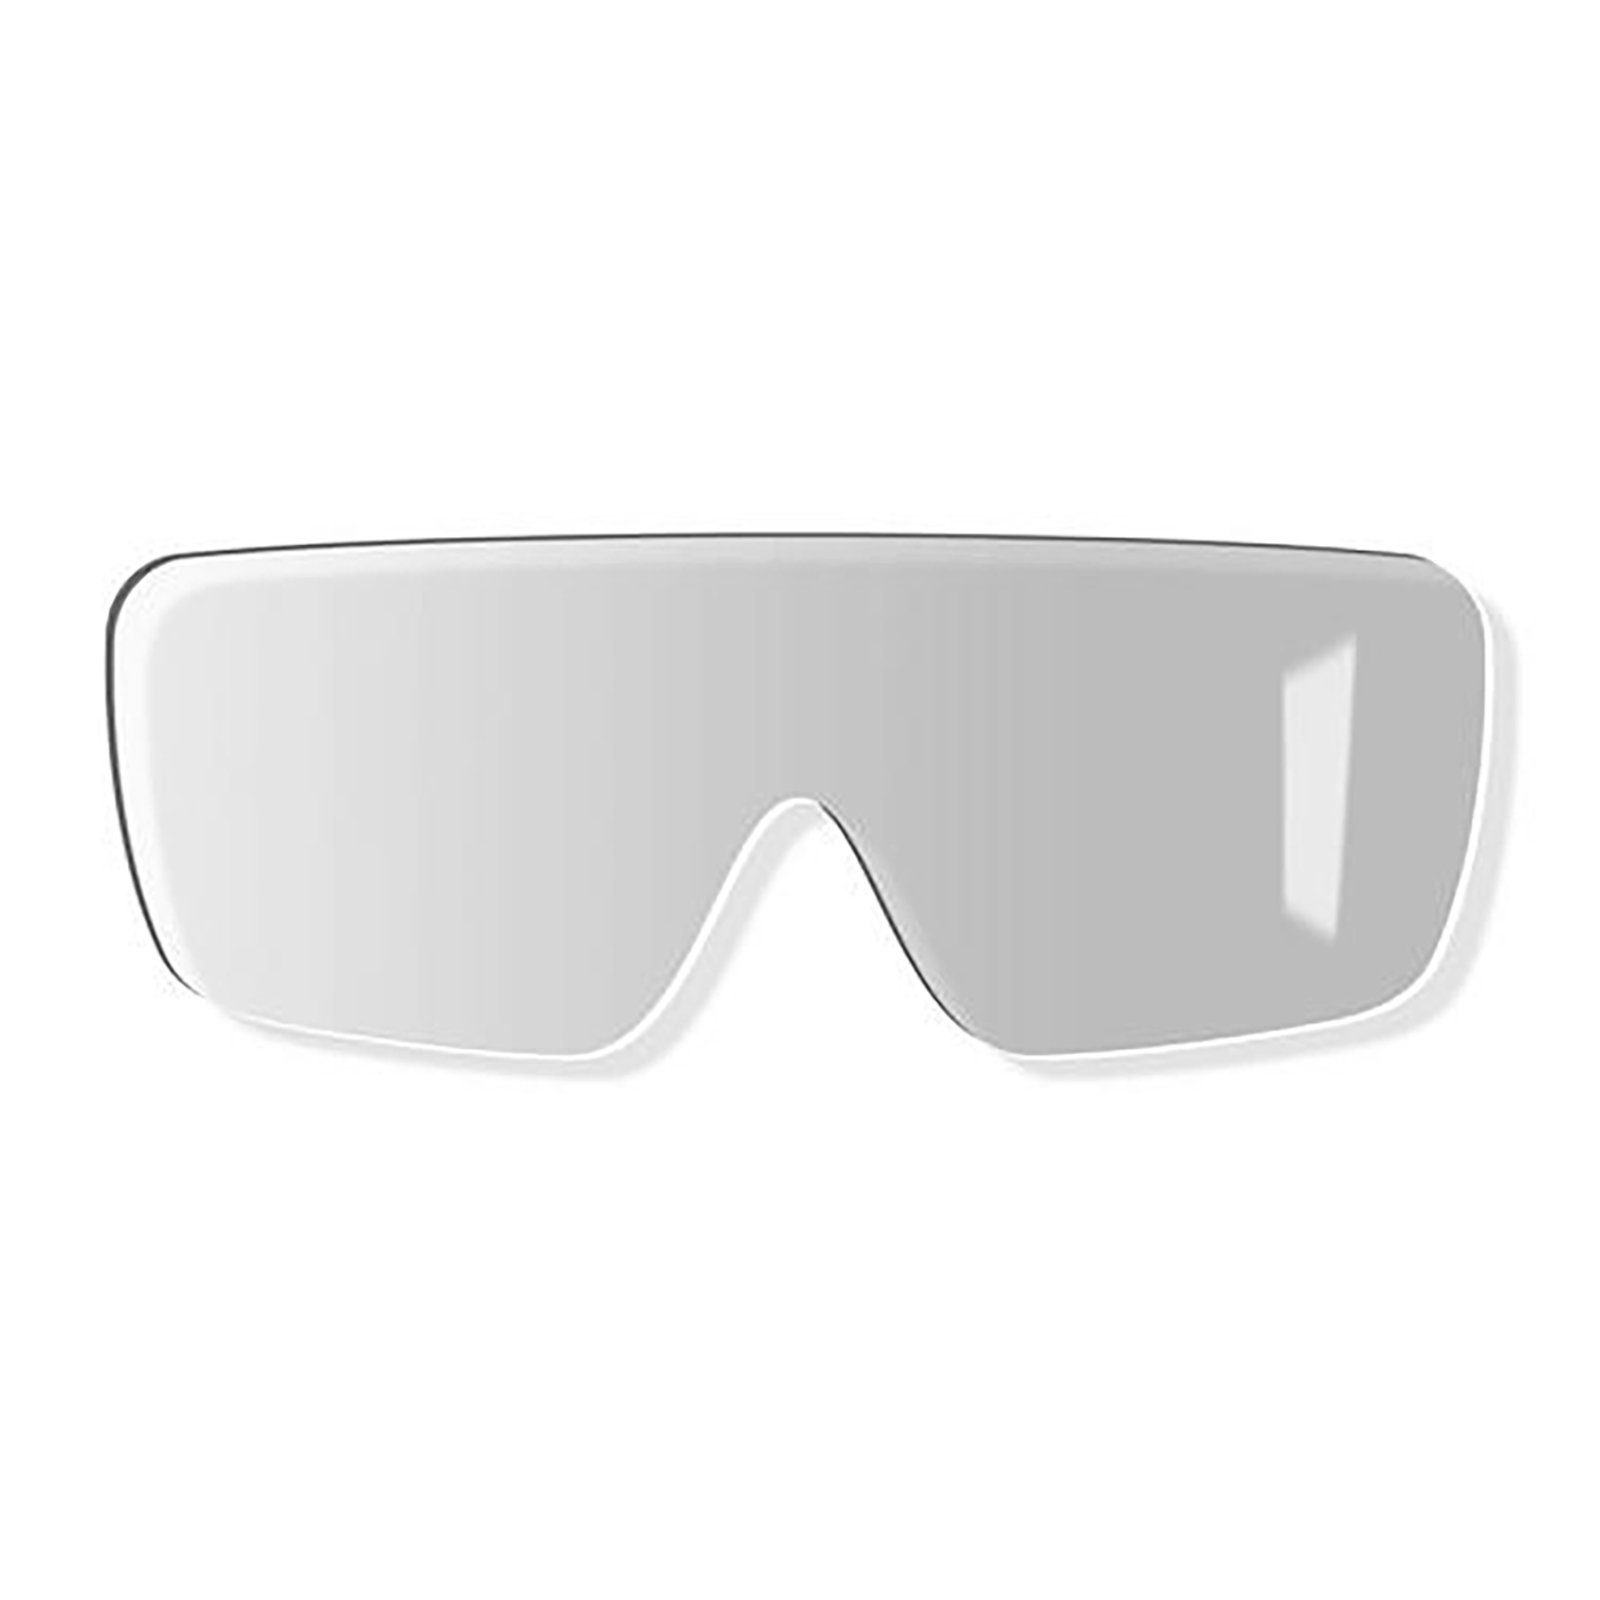 Uvex Arbeitsschutzbrille Ersatzscheibe 23% exc. sv grau 9302256